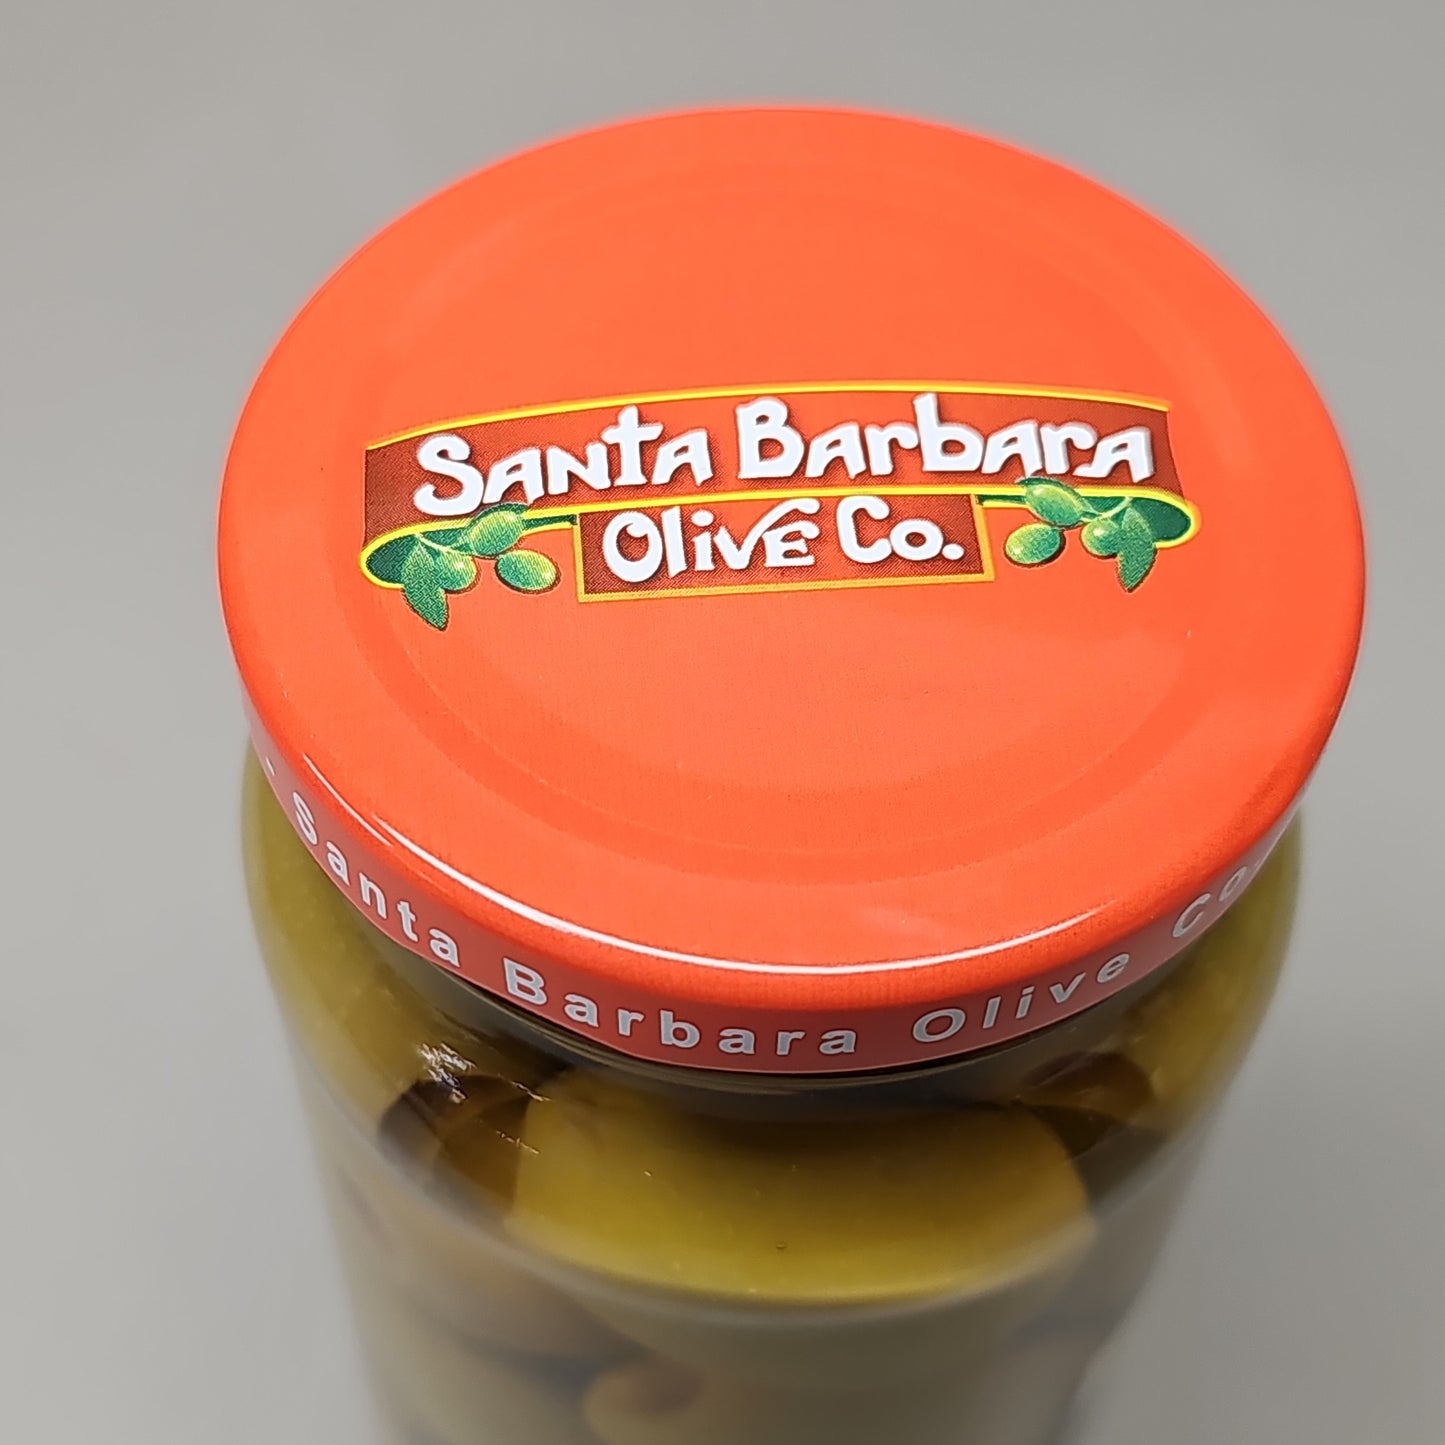 SANTA BARBARA OLIVE CO (6 PACK) Martini Pimento Olives 10 fl oz BB 02/17/24